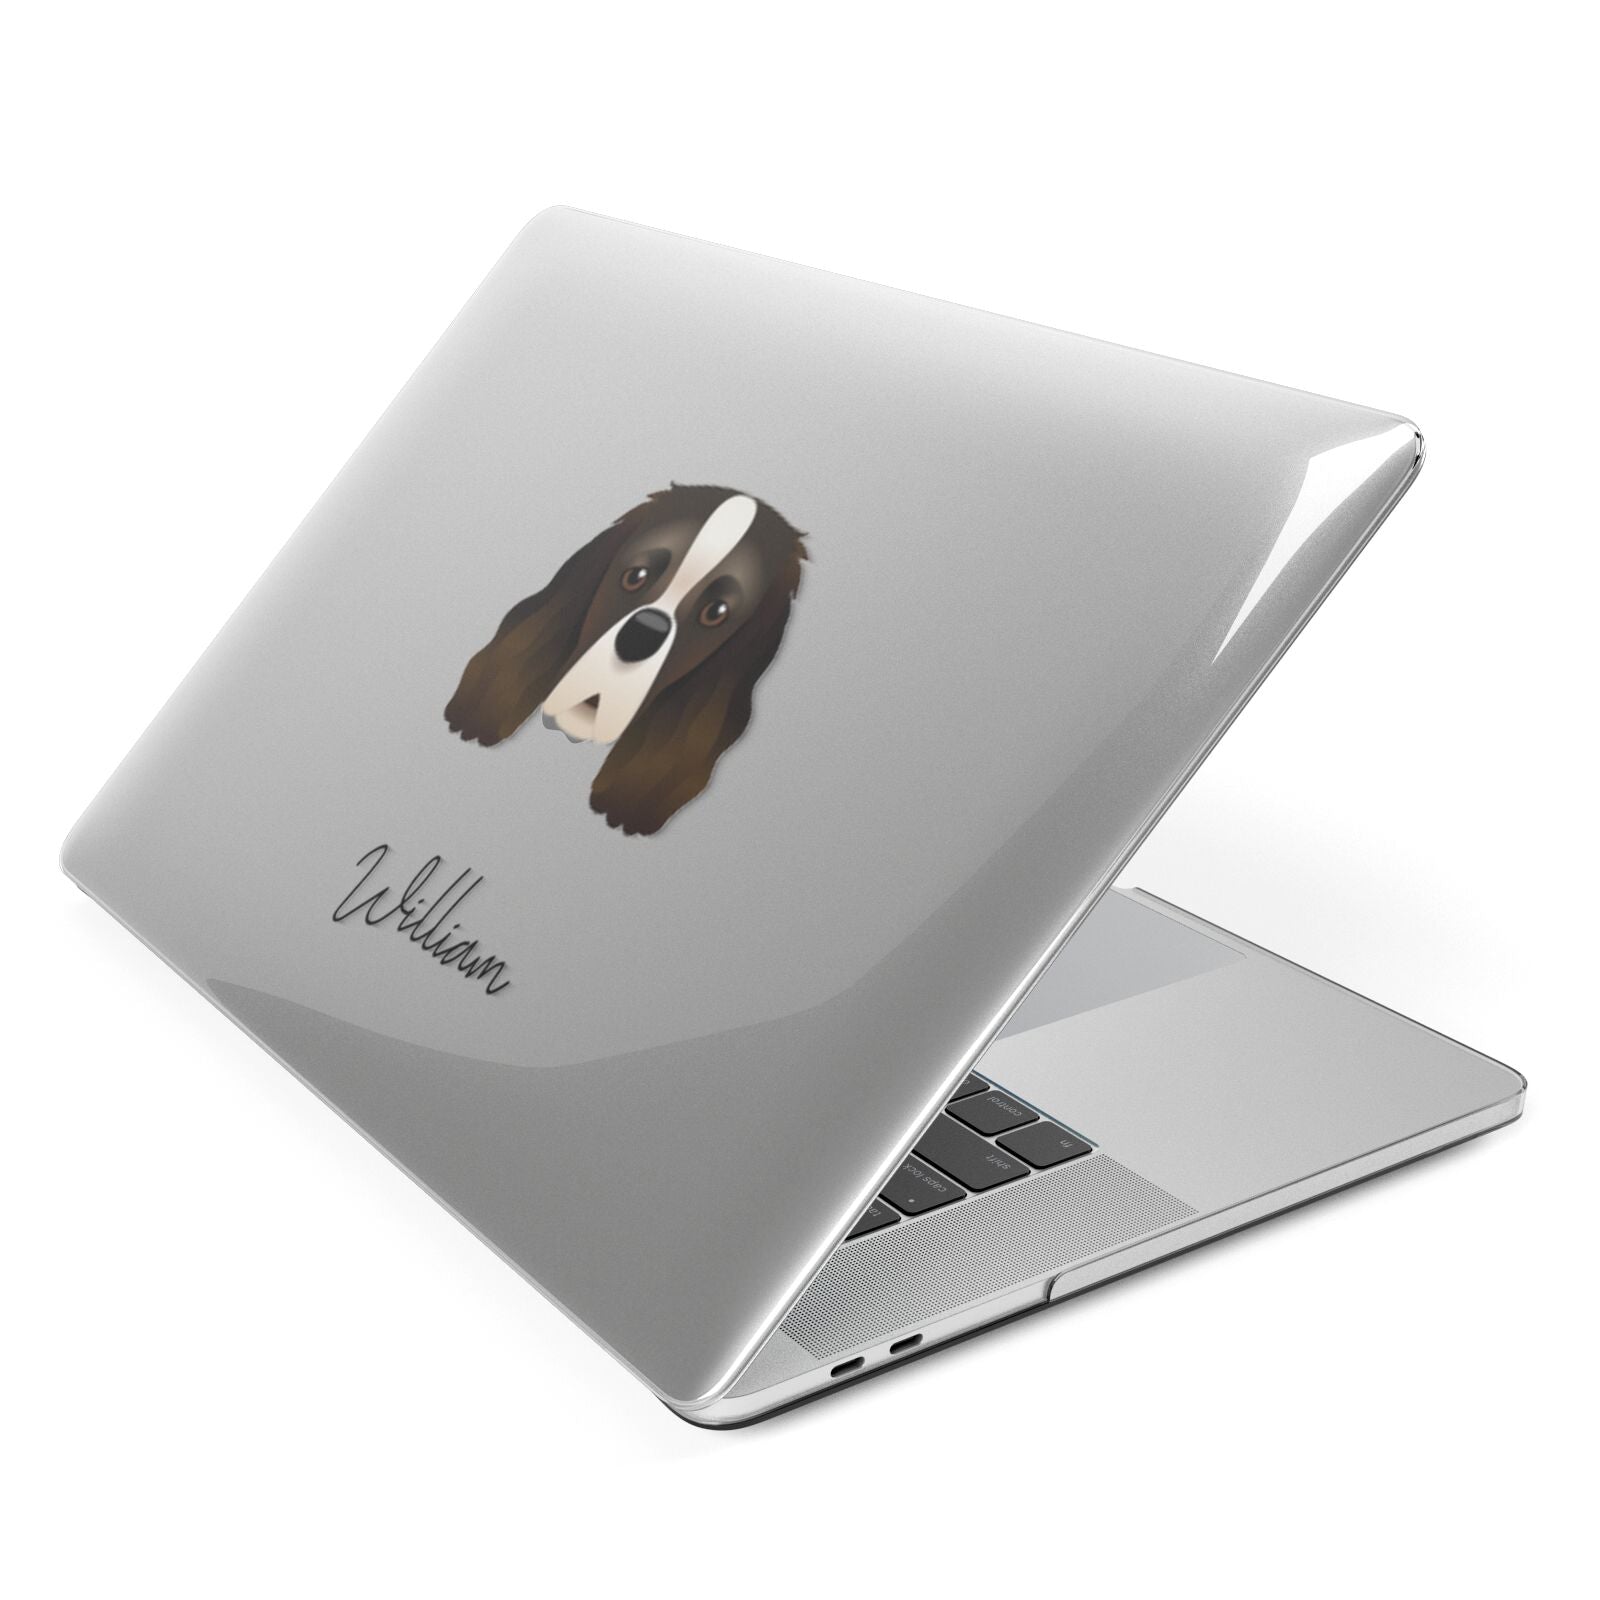 Cavalier King Charles Spaniel Personalised Apple MacBook Case Side View